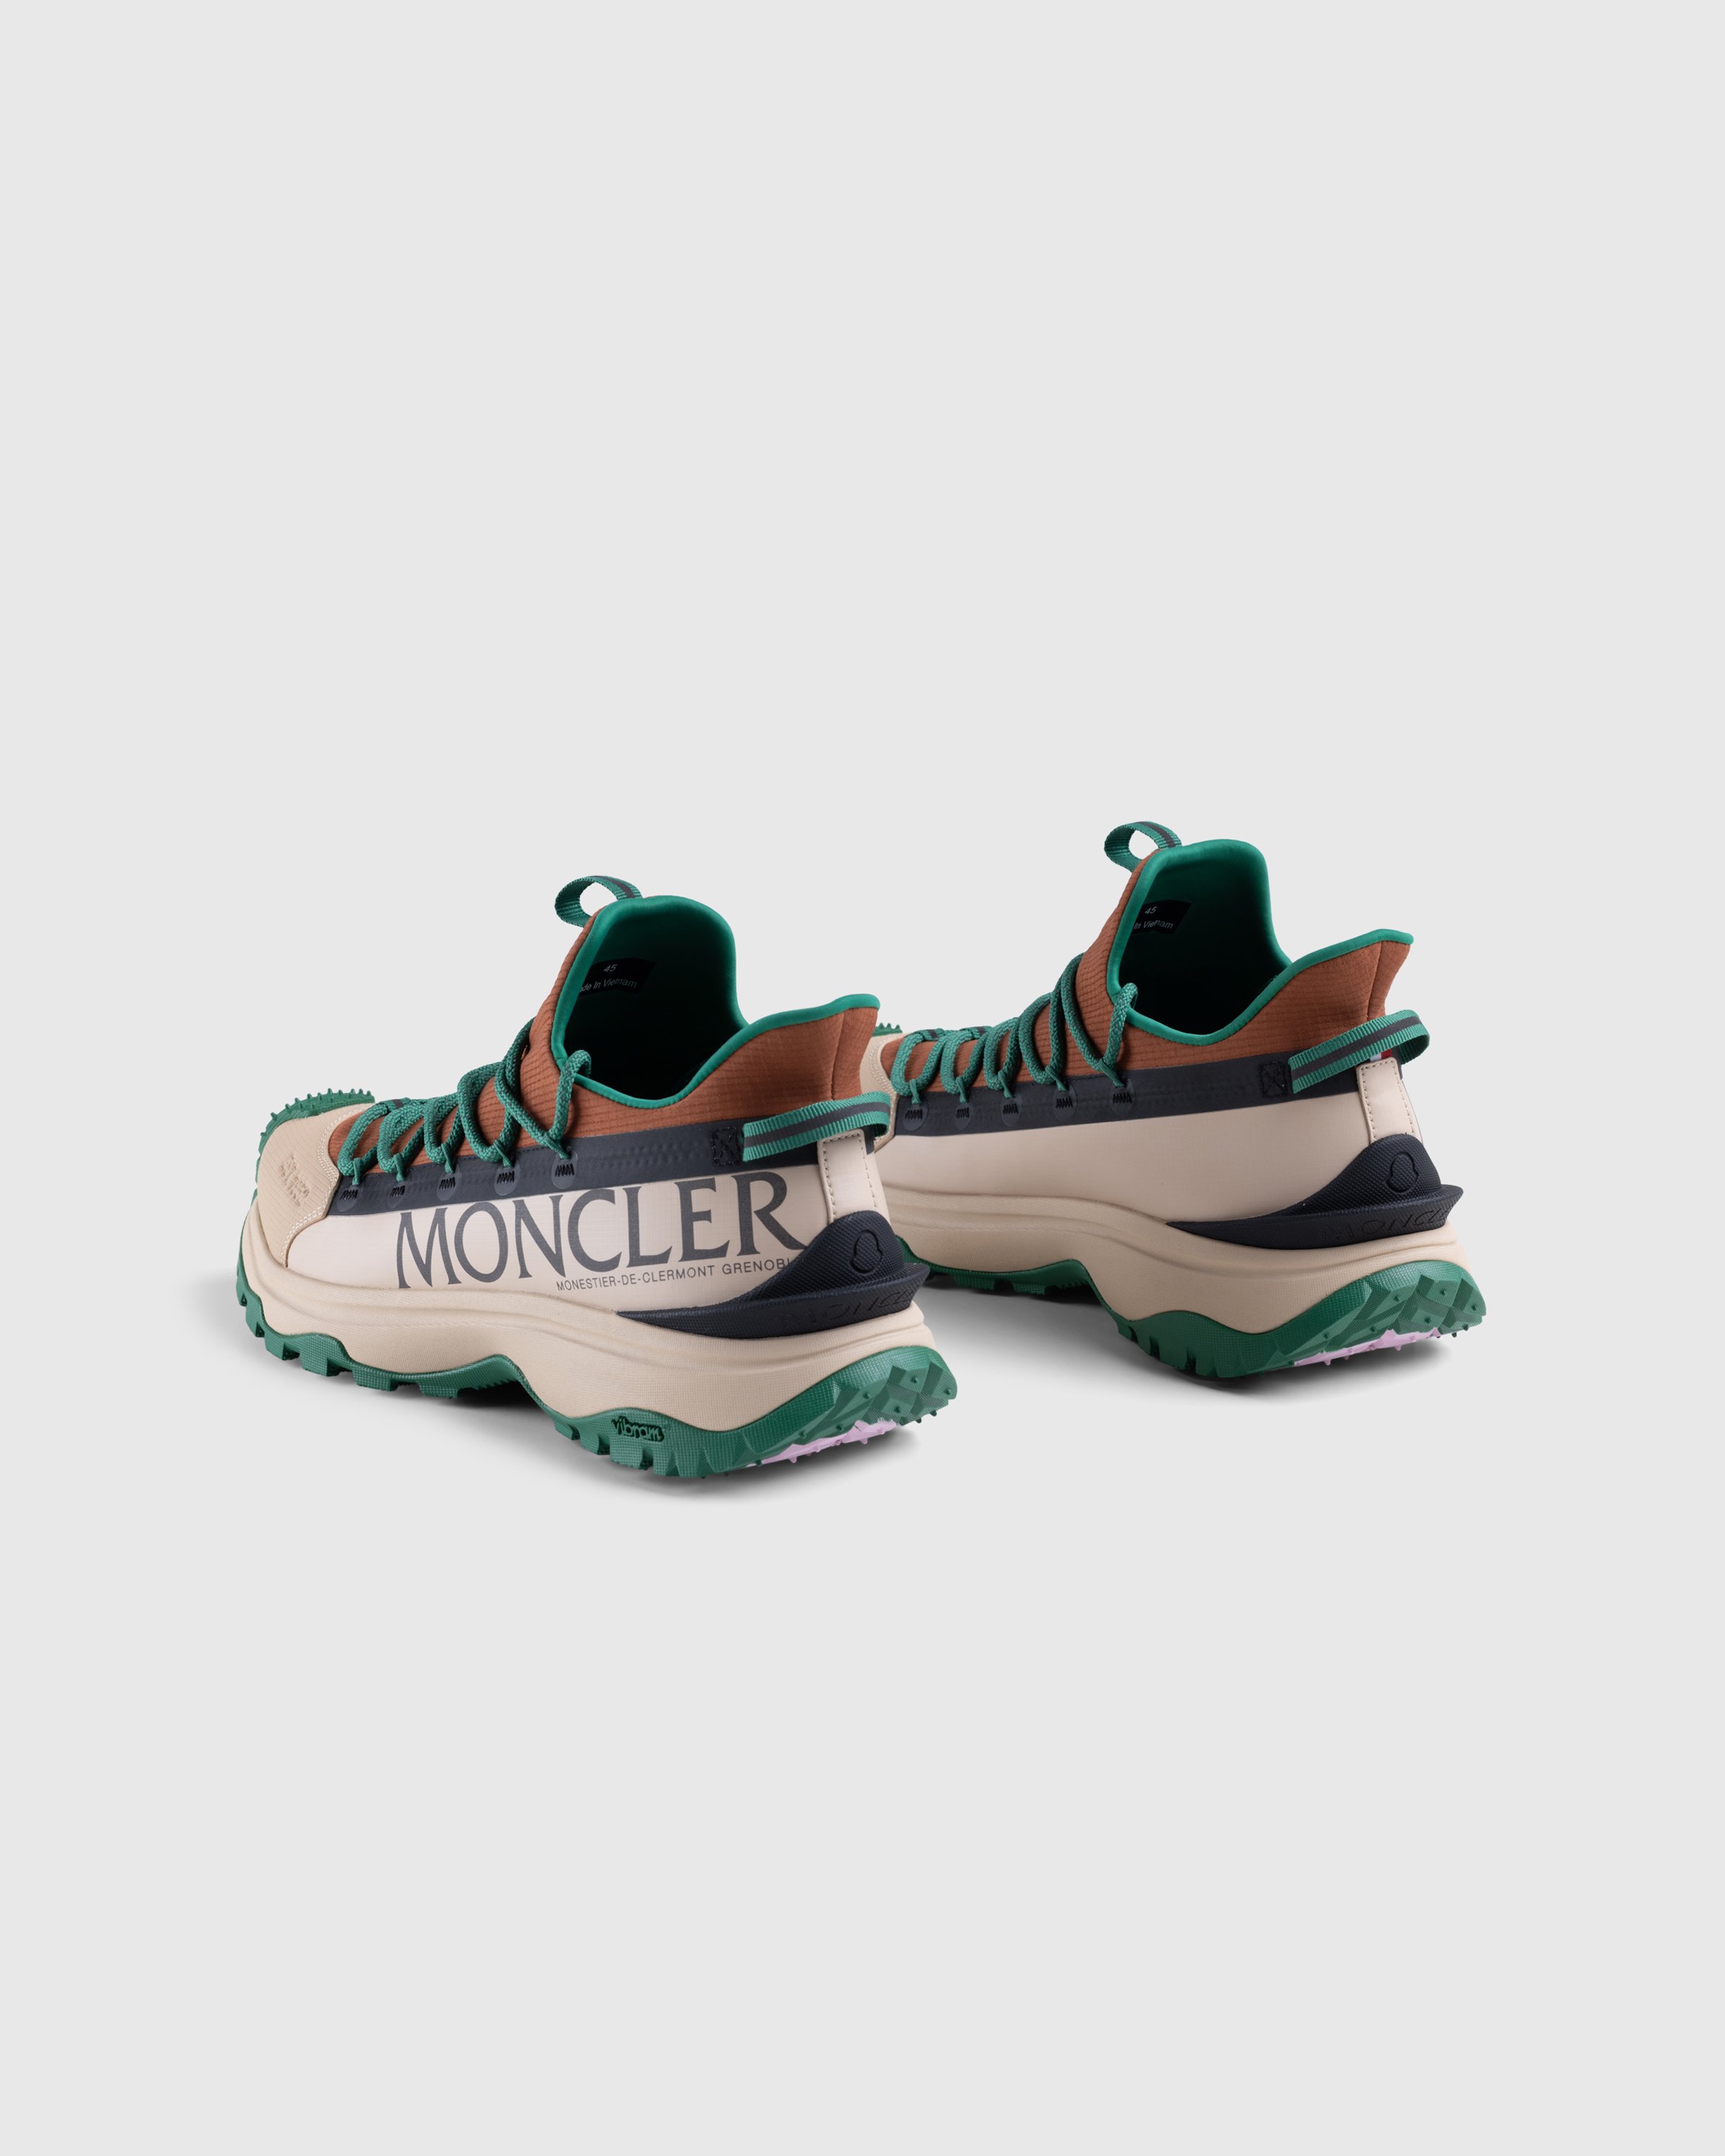 Moncler - Trailgrip Lite 2 Sneakers Brown/Green - Footwear - Orange - Image 4